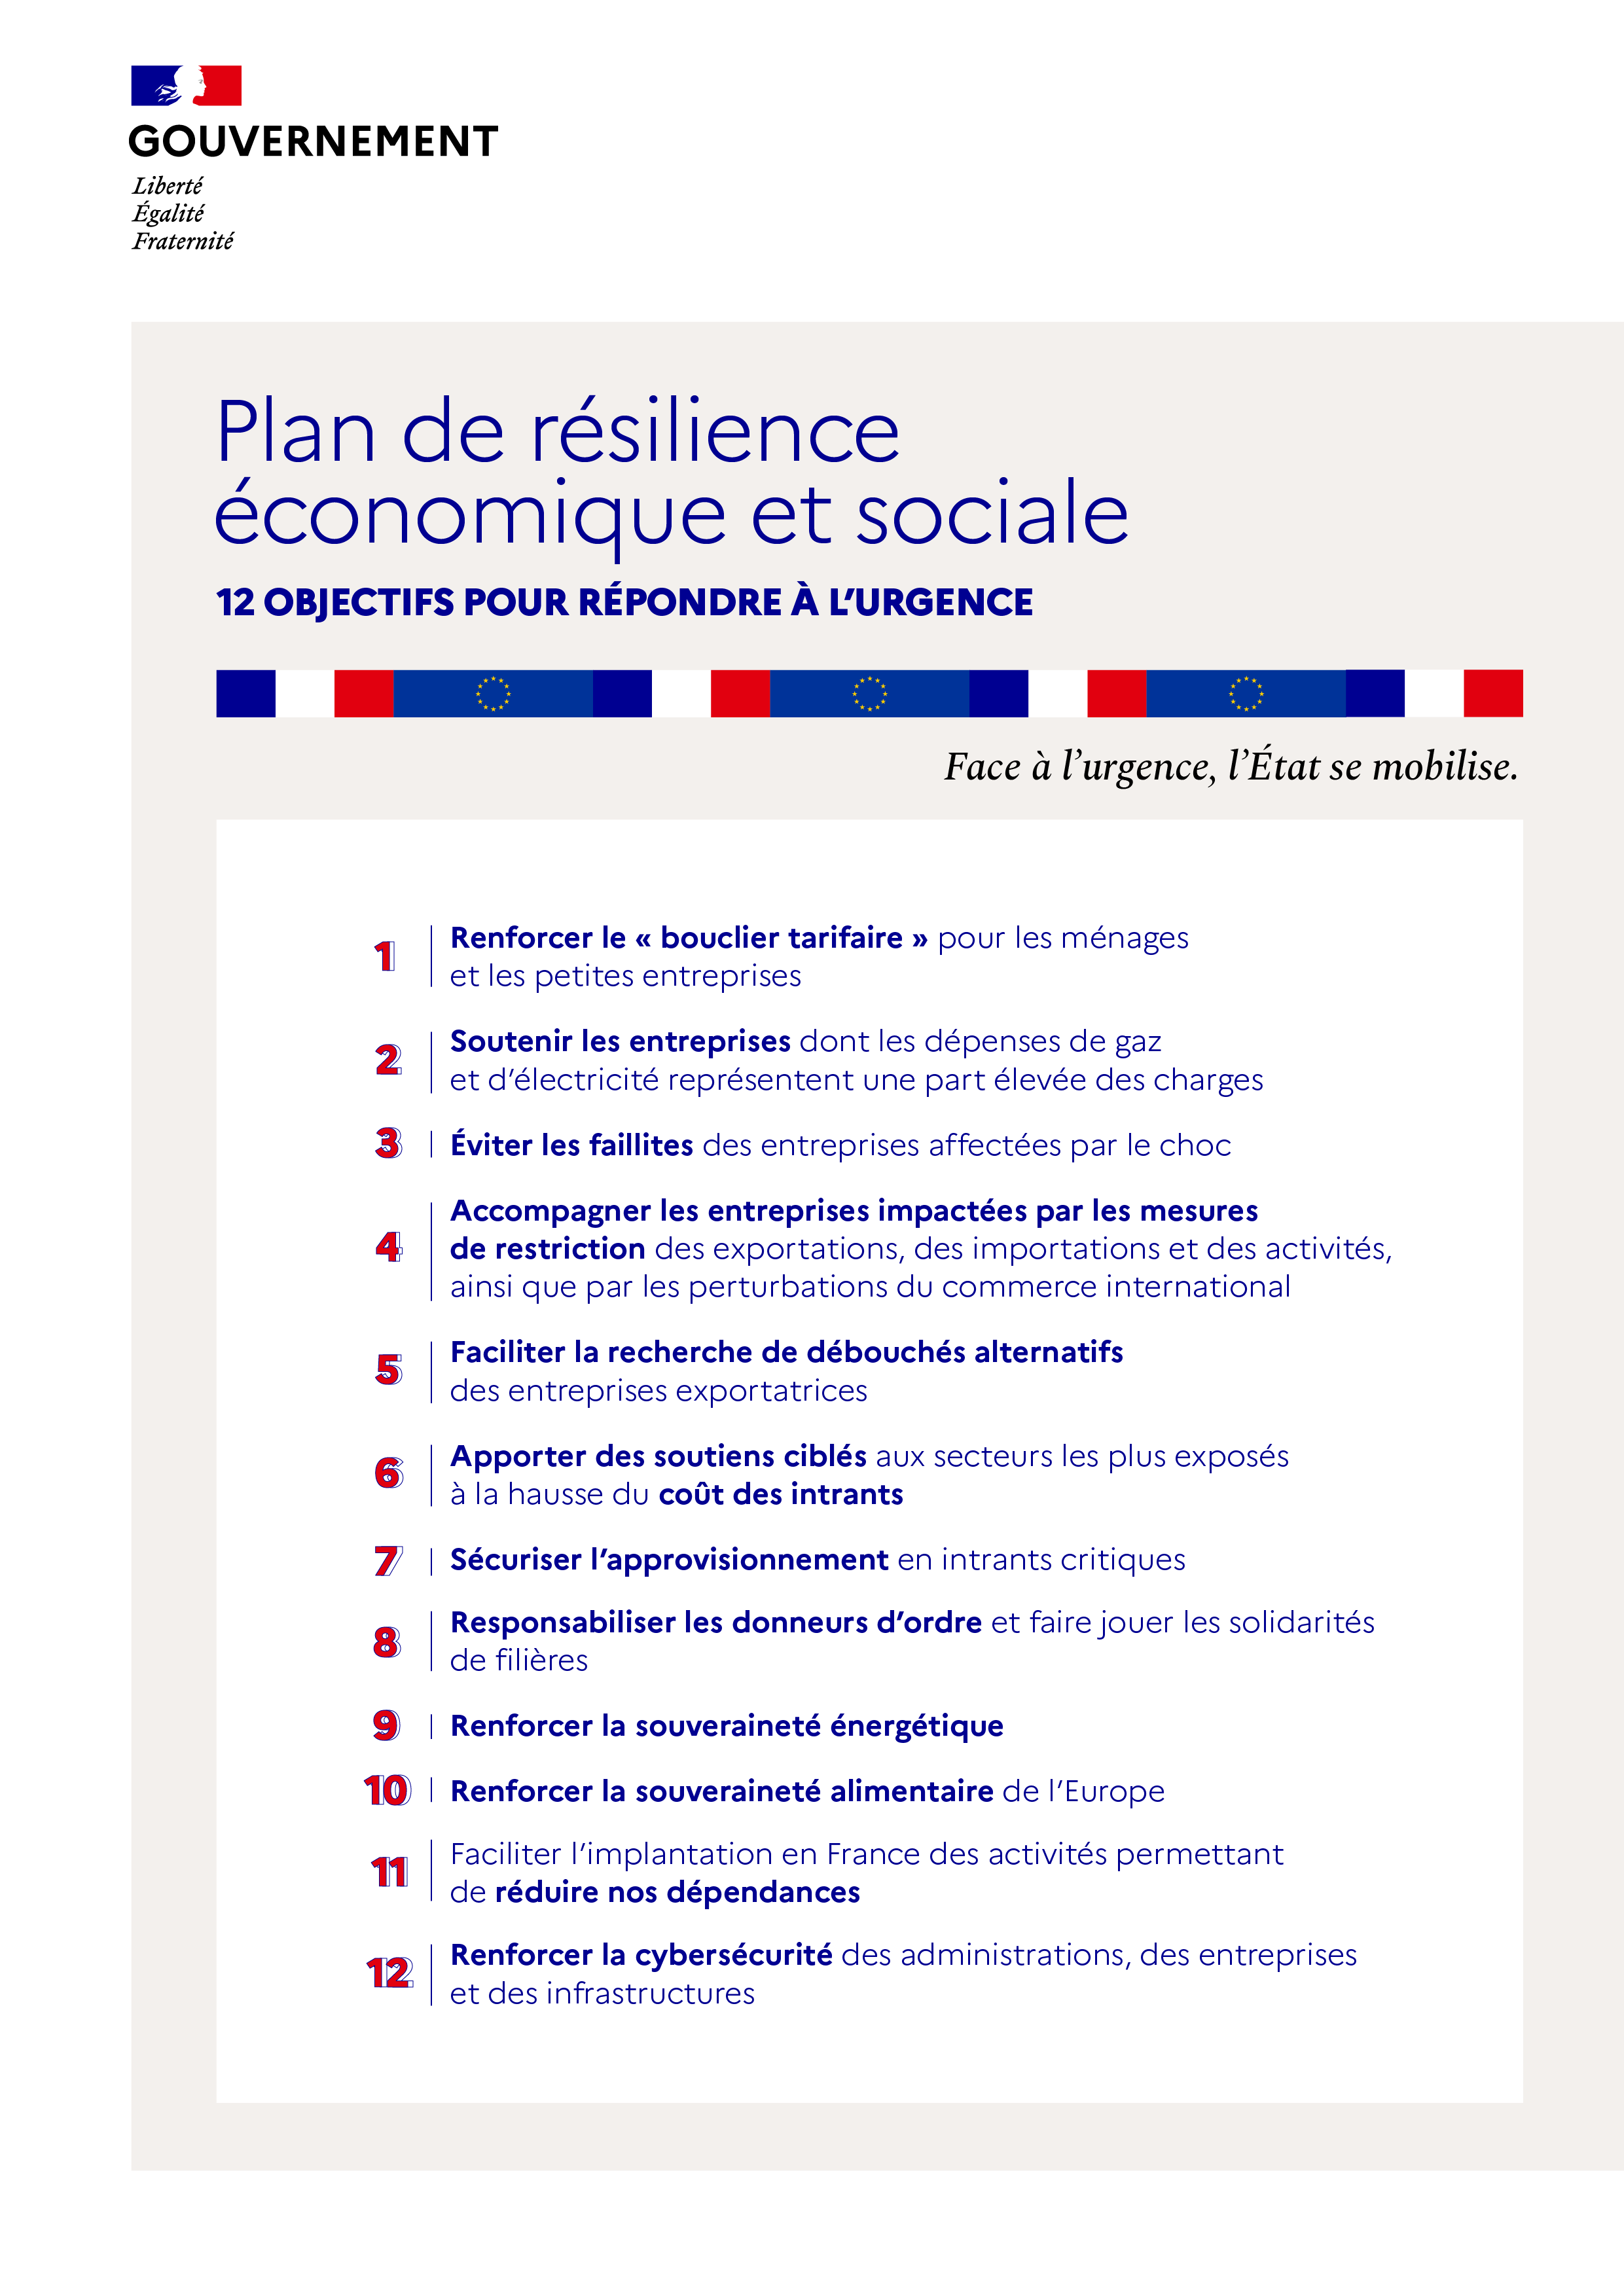 Plan de résilience économique et sociale - 12 objectif pour répondre à l'urgence